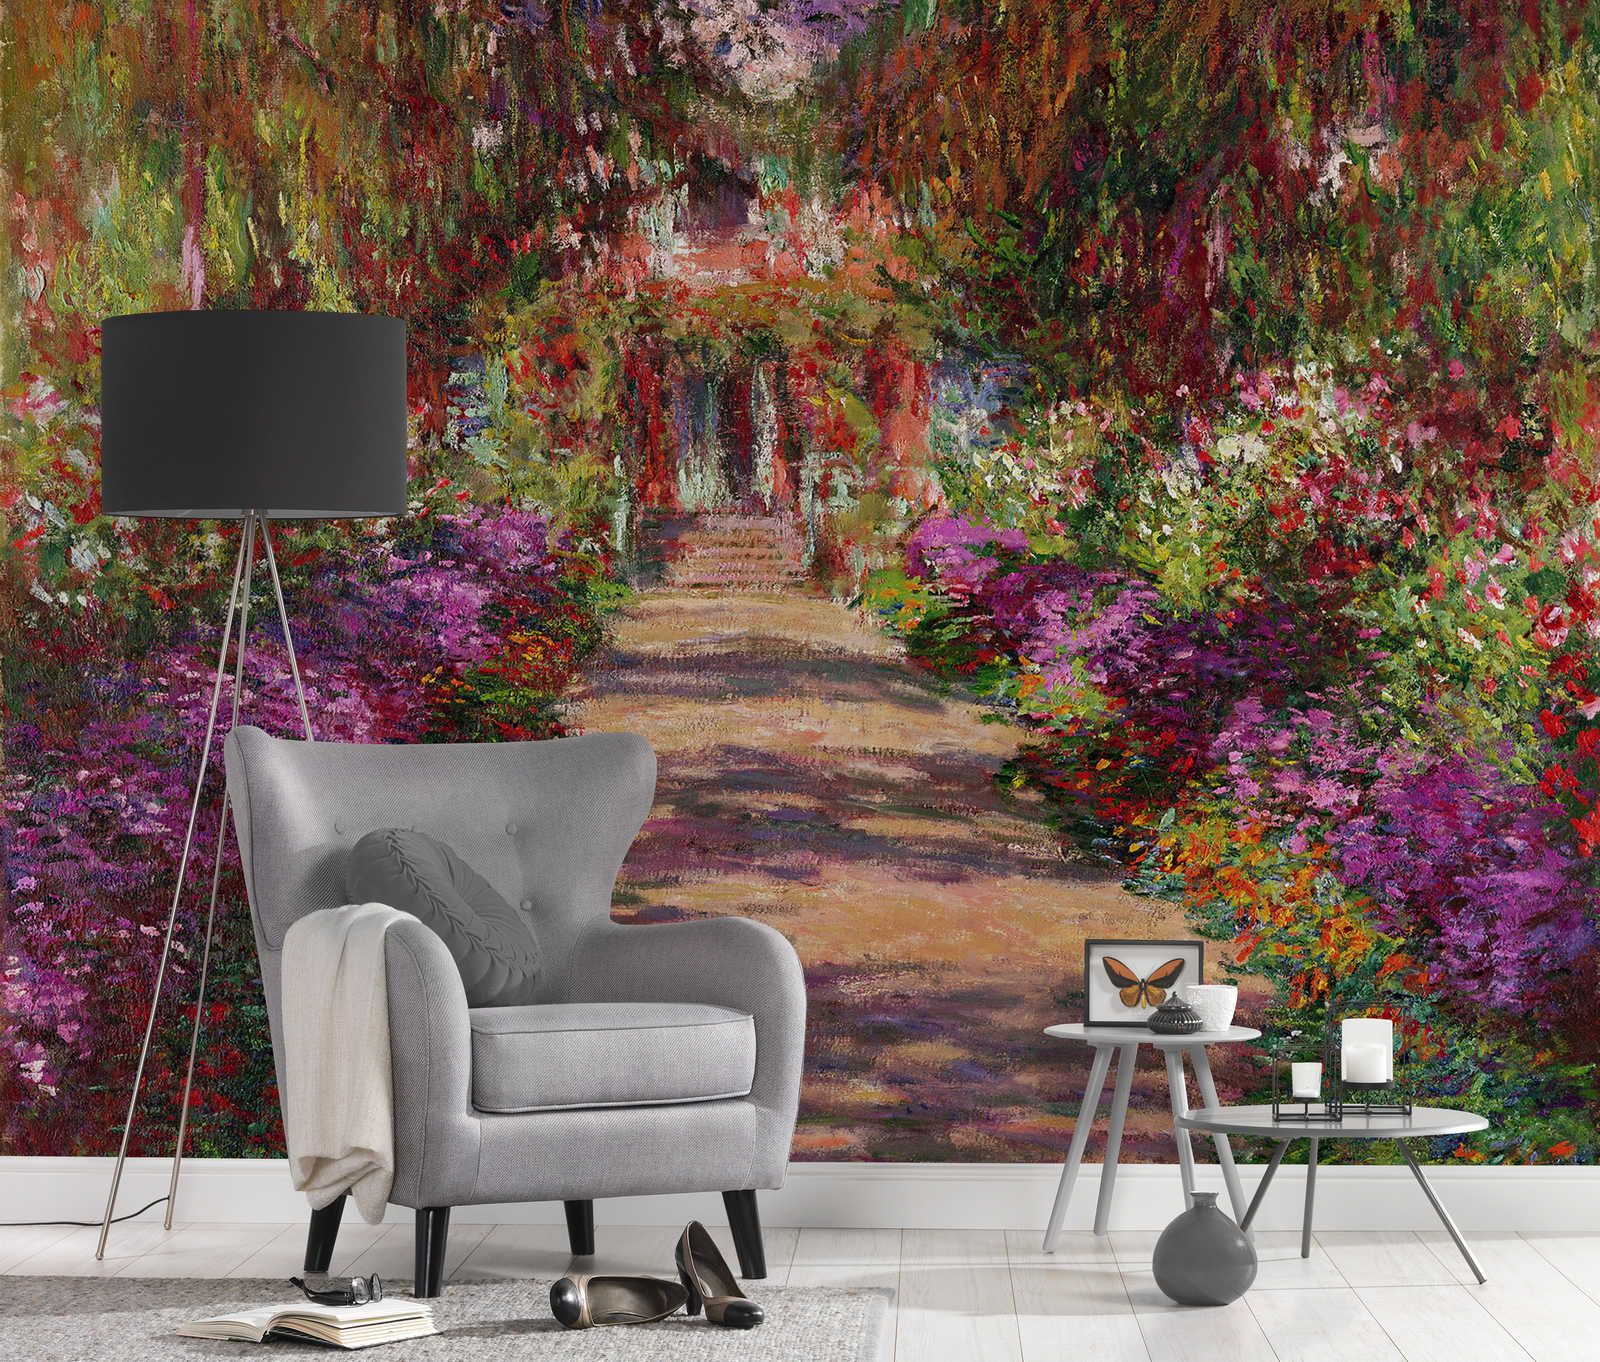             Fototapete "Weg ins Garten in Giverny" von Claude Monet
        